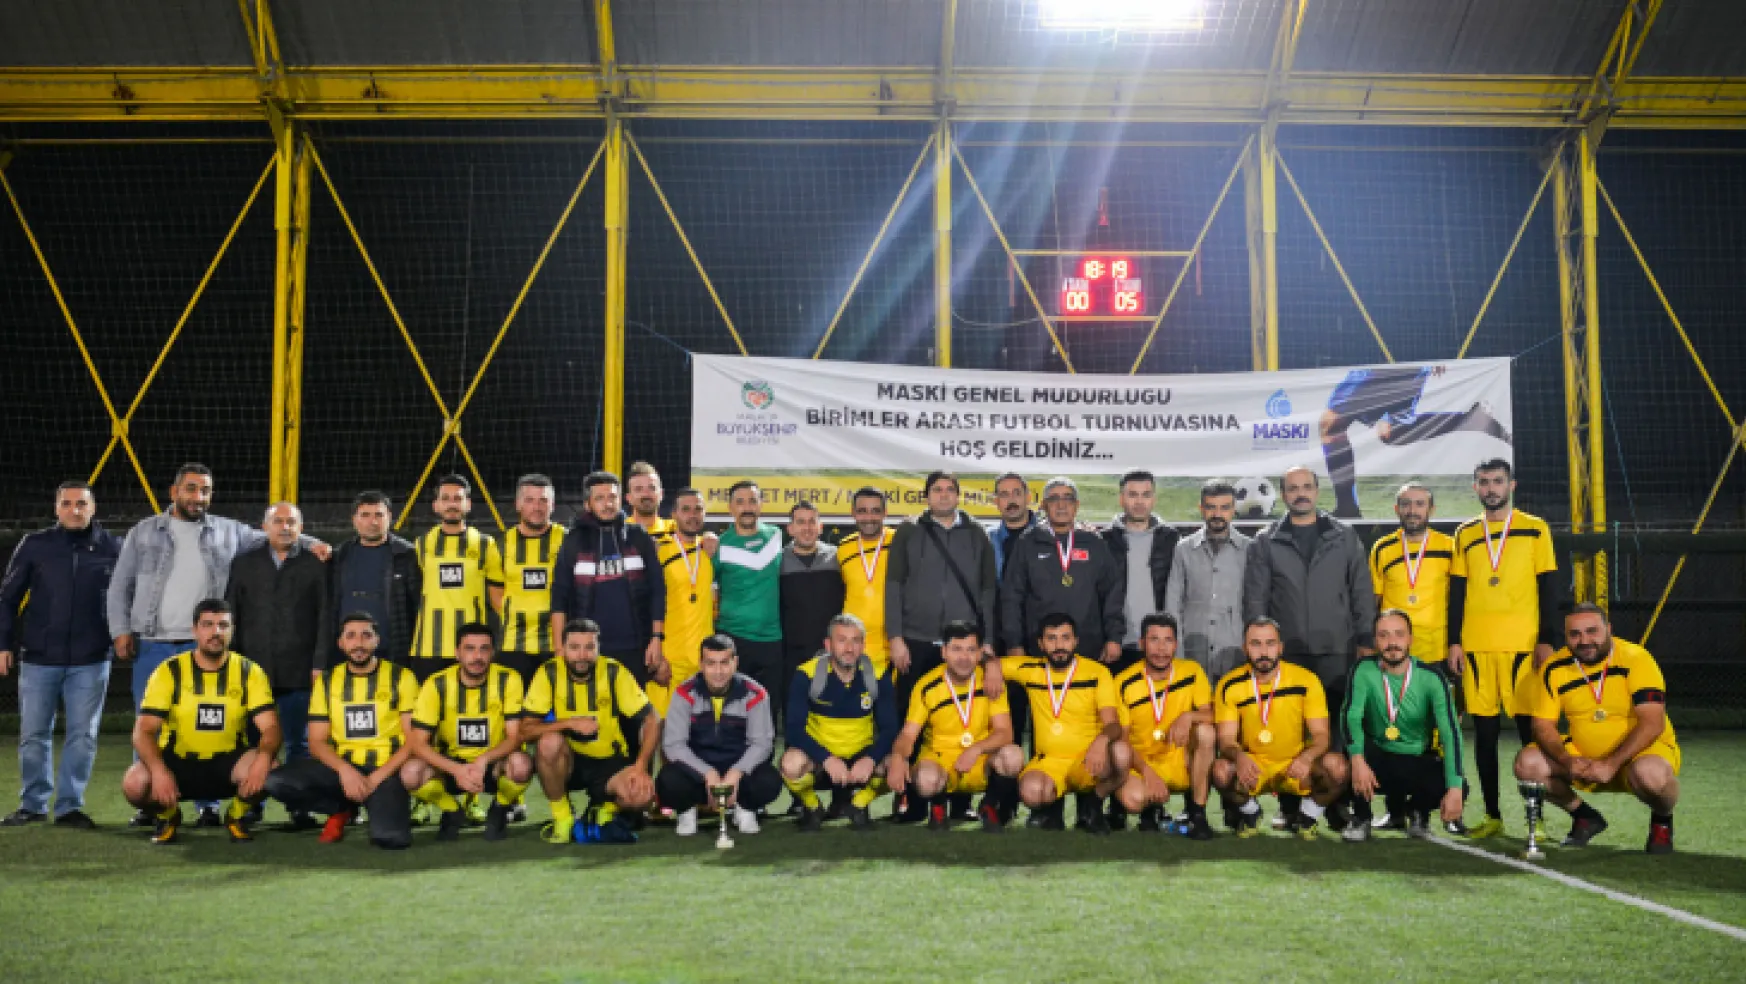 Maski 'Birimler Arası Futbol Turnuvası' Sona Erdi